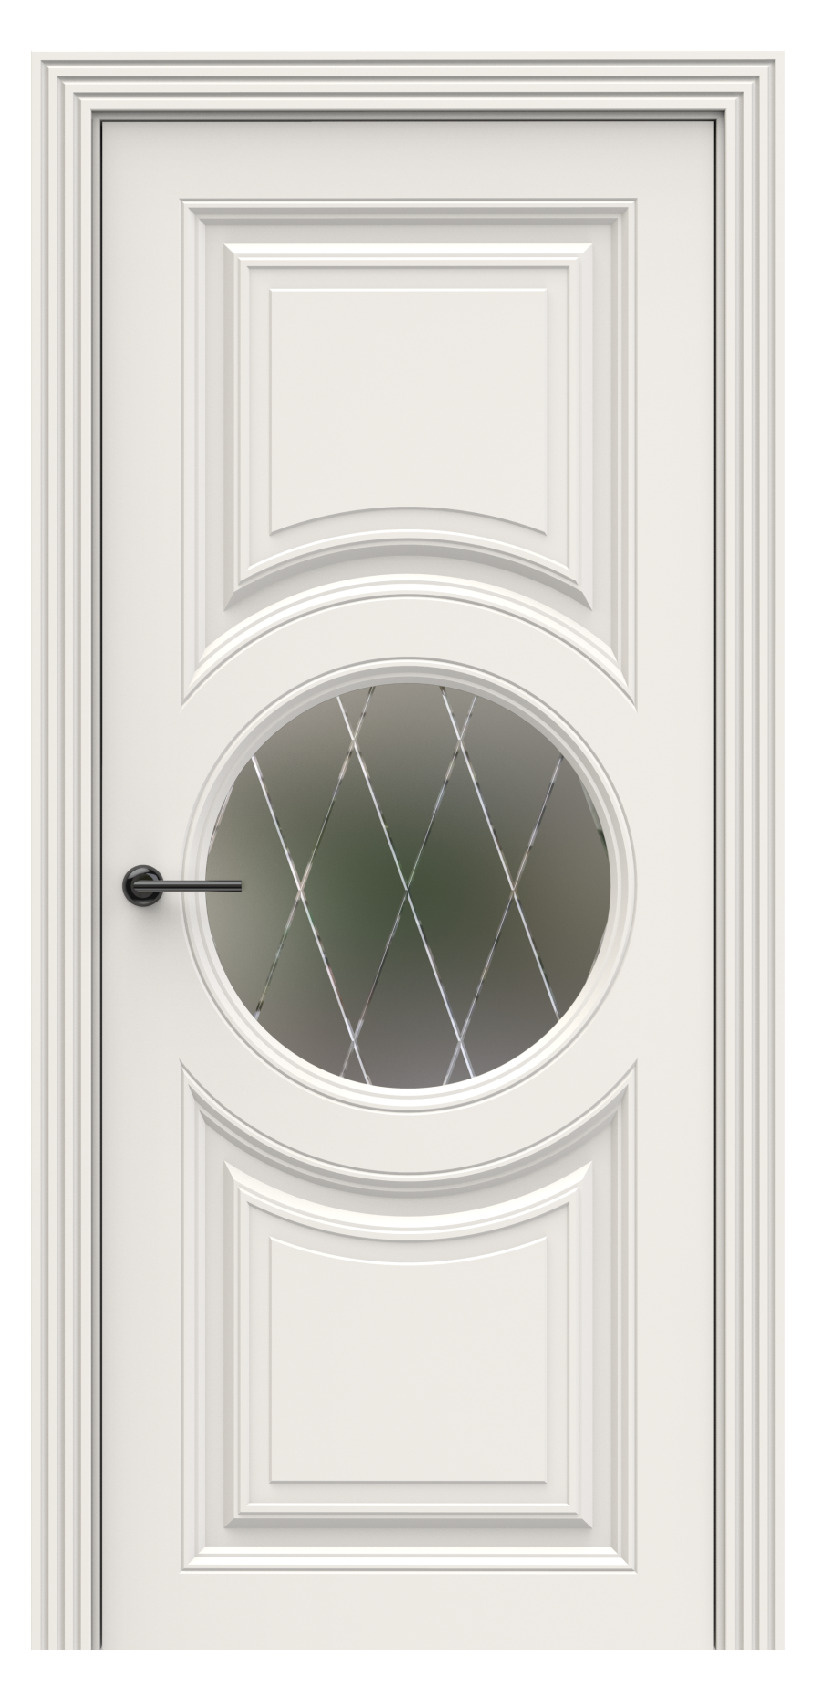 Questdoors Межкомнатная дверь QBR21, арт. 17934 - фото №1